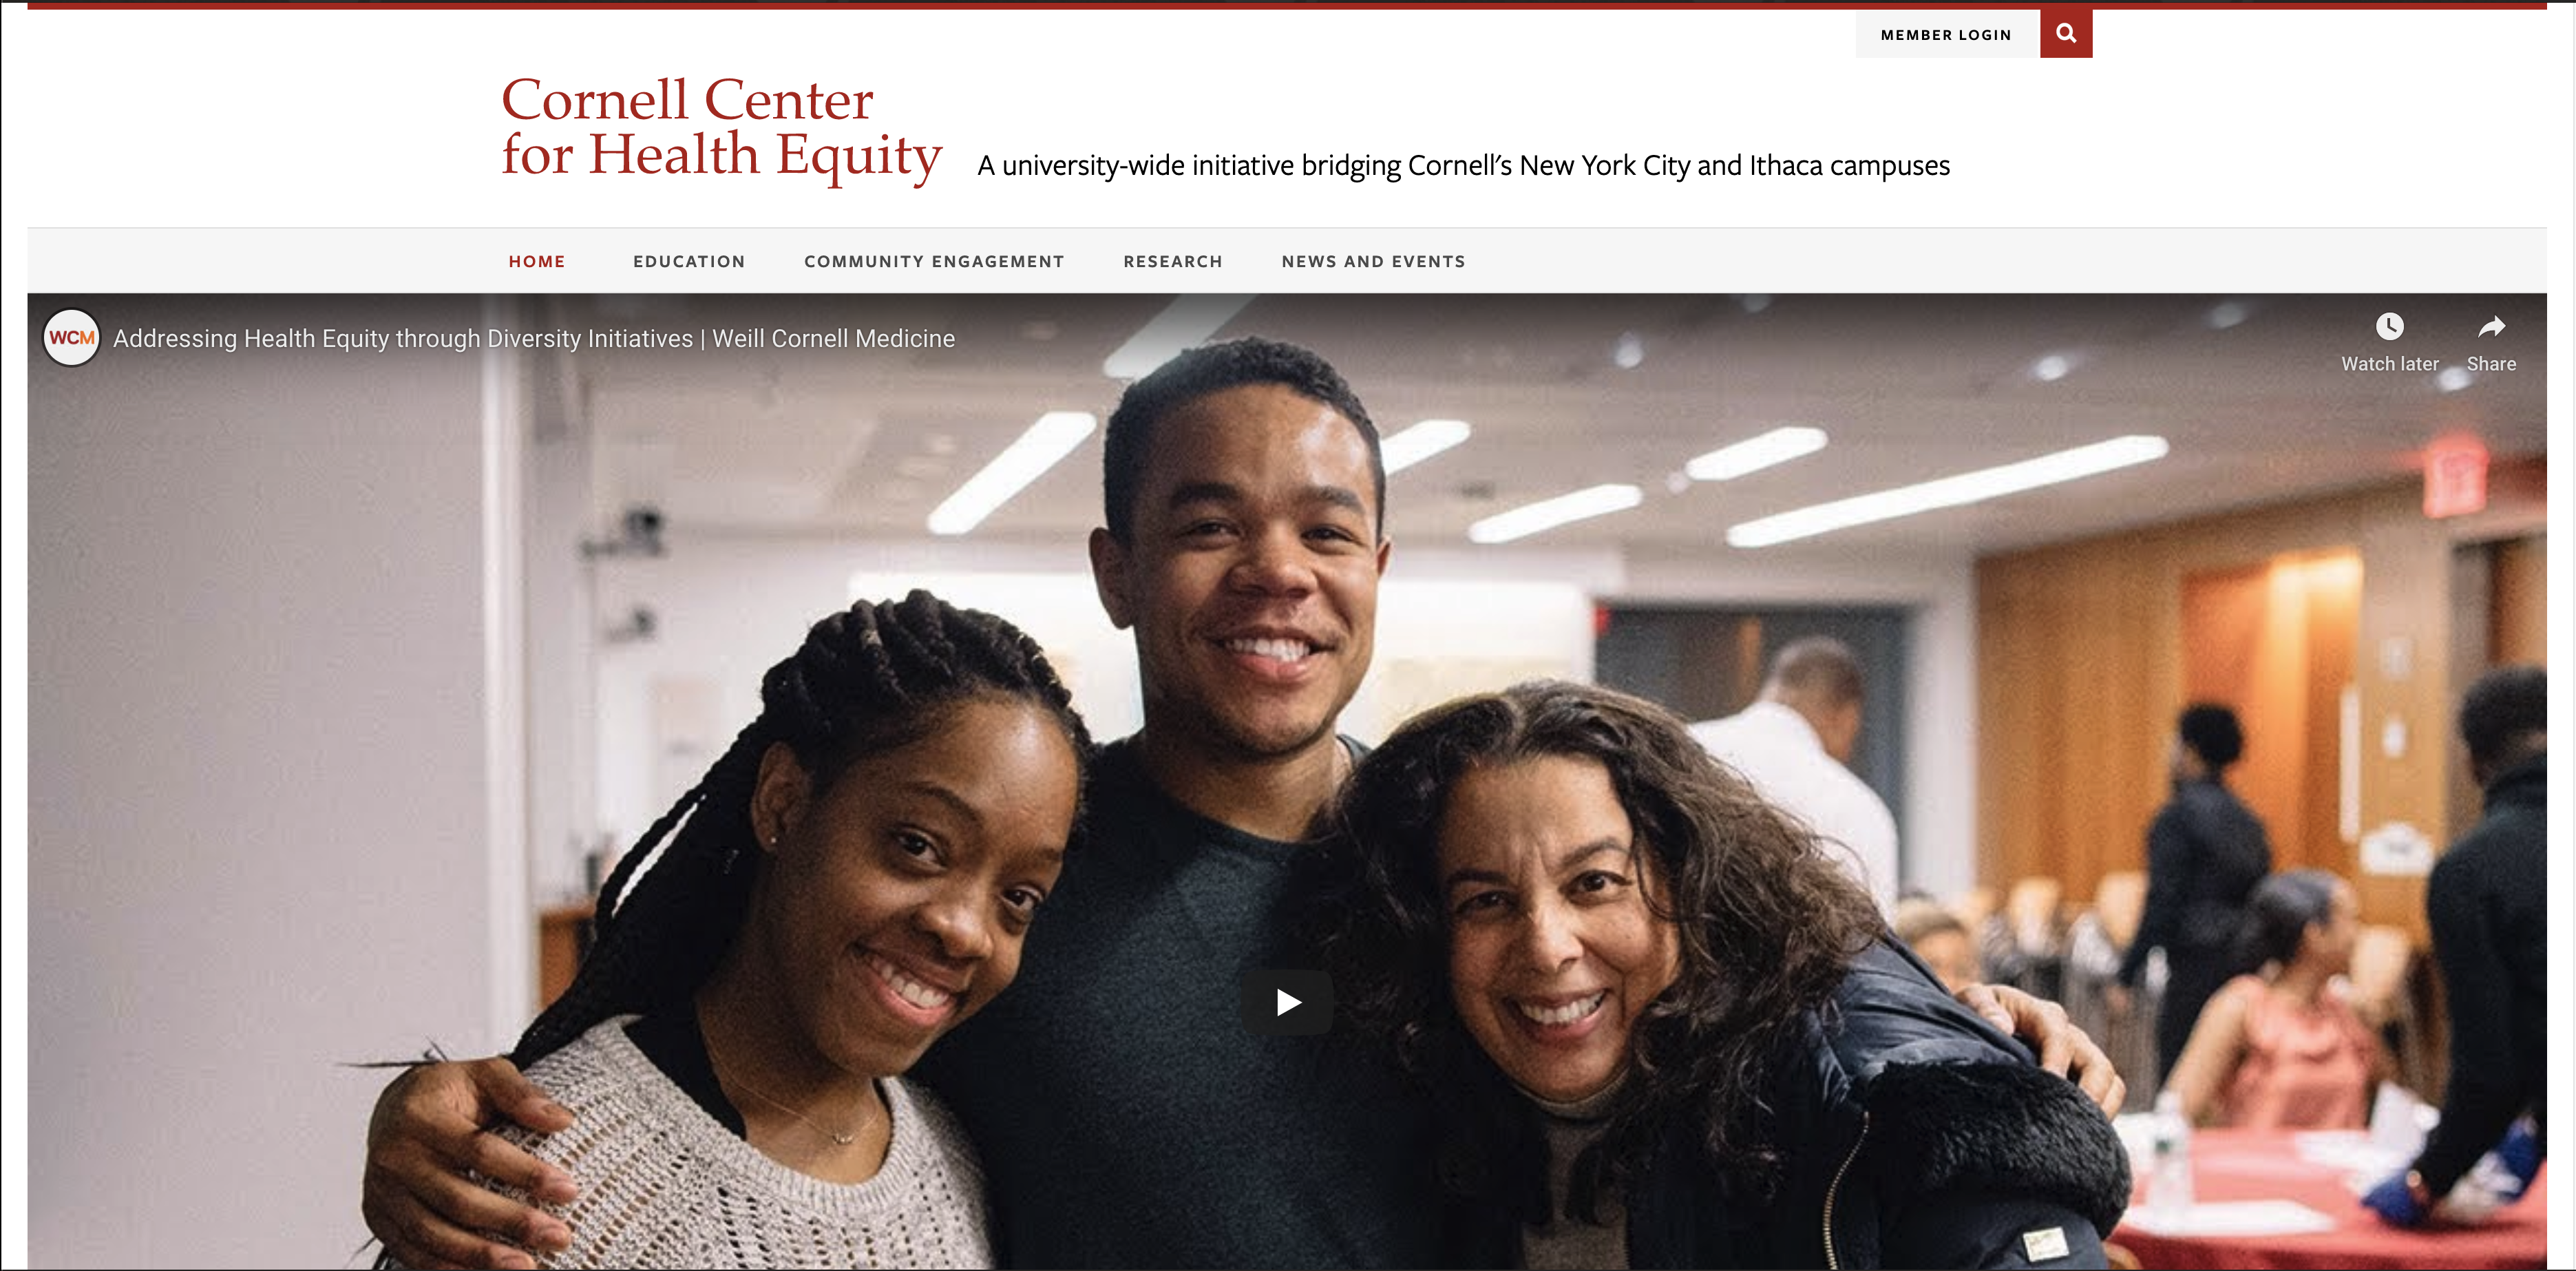 Cornell Center for Health Equity website